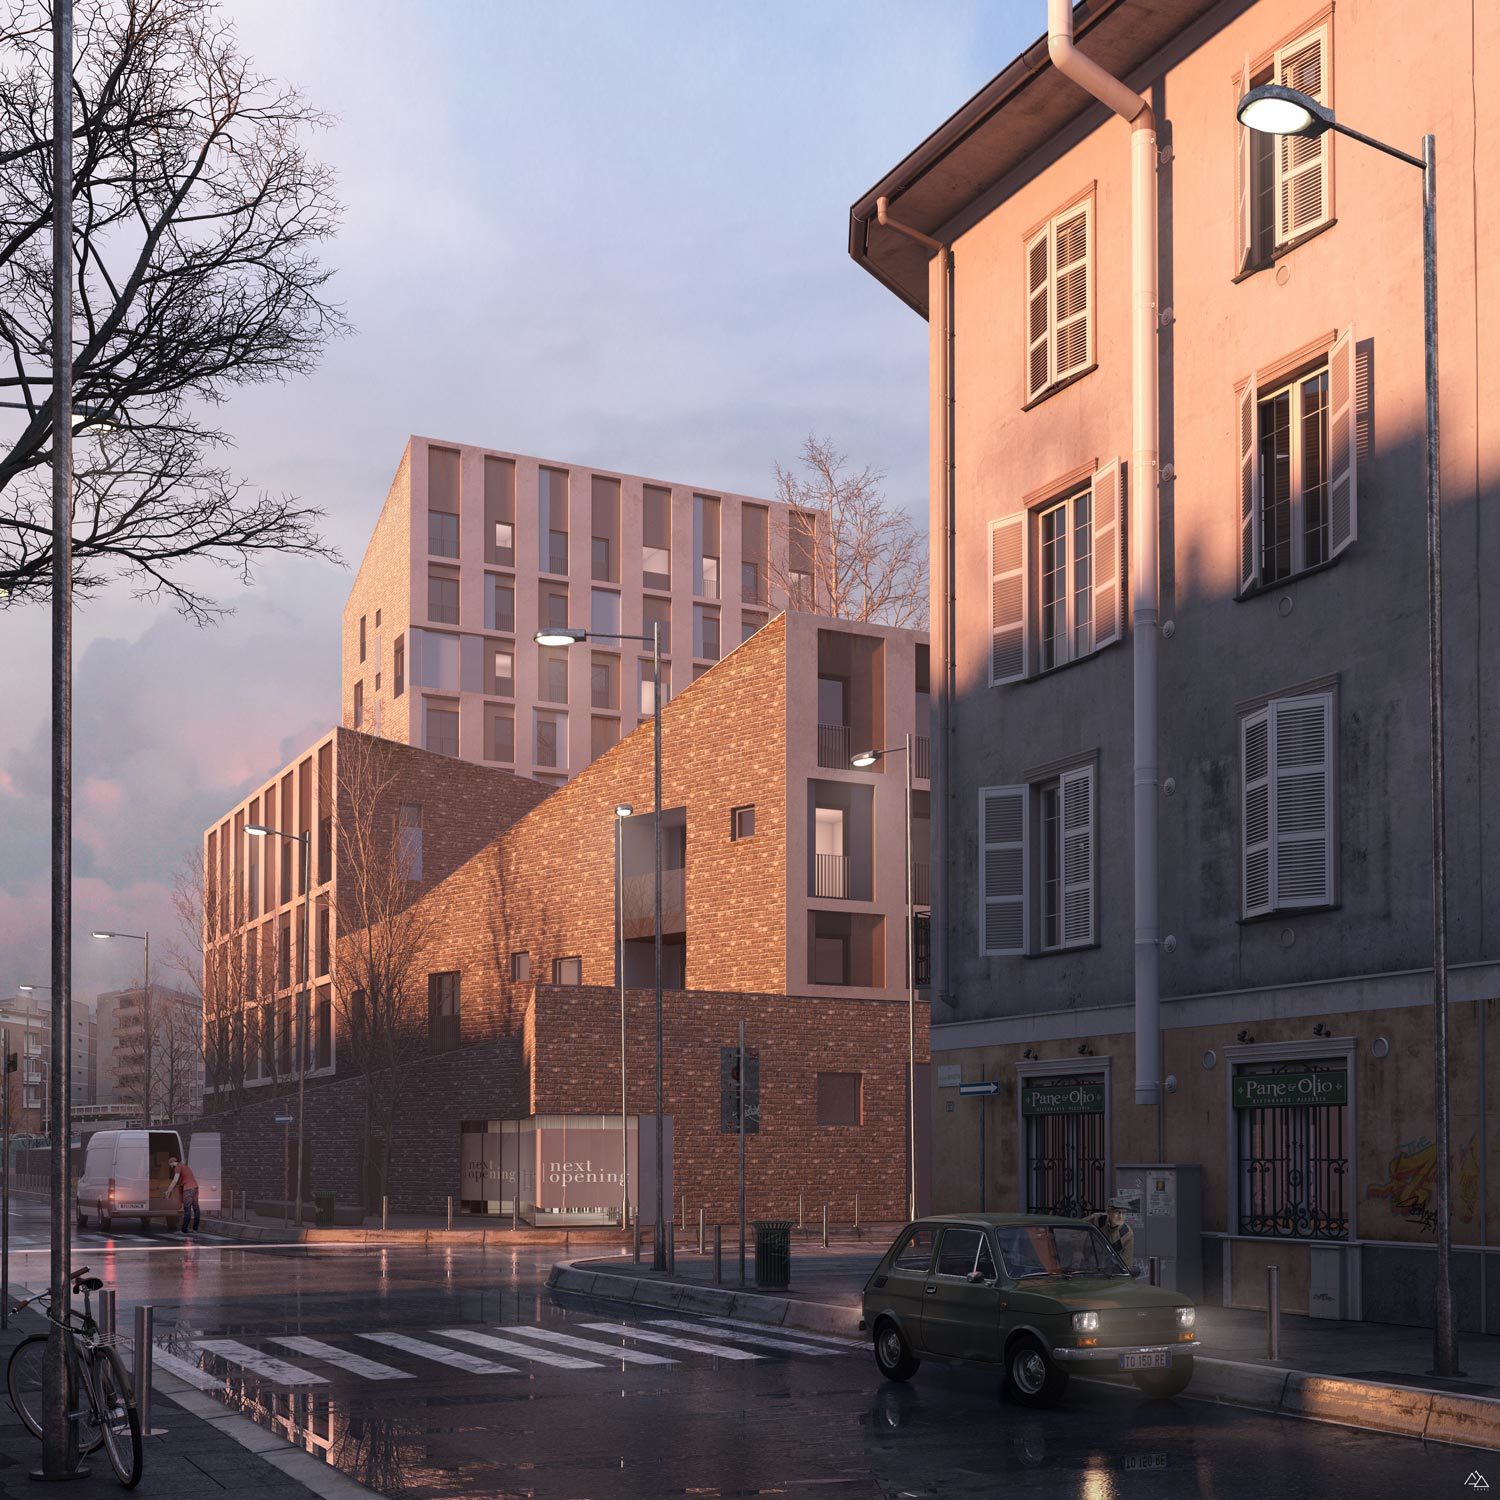 Via Valtorta Residentials in Milan-REinterpretation-CZA Cino Zucchi Architects, 2019